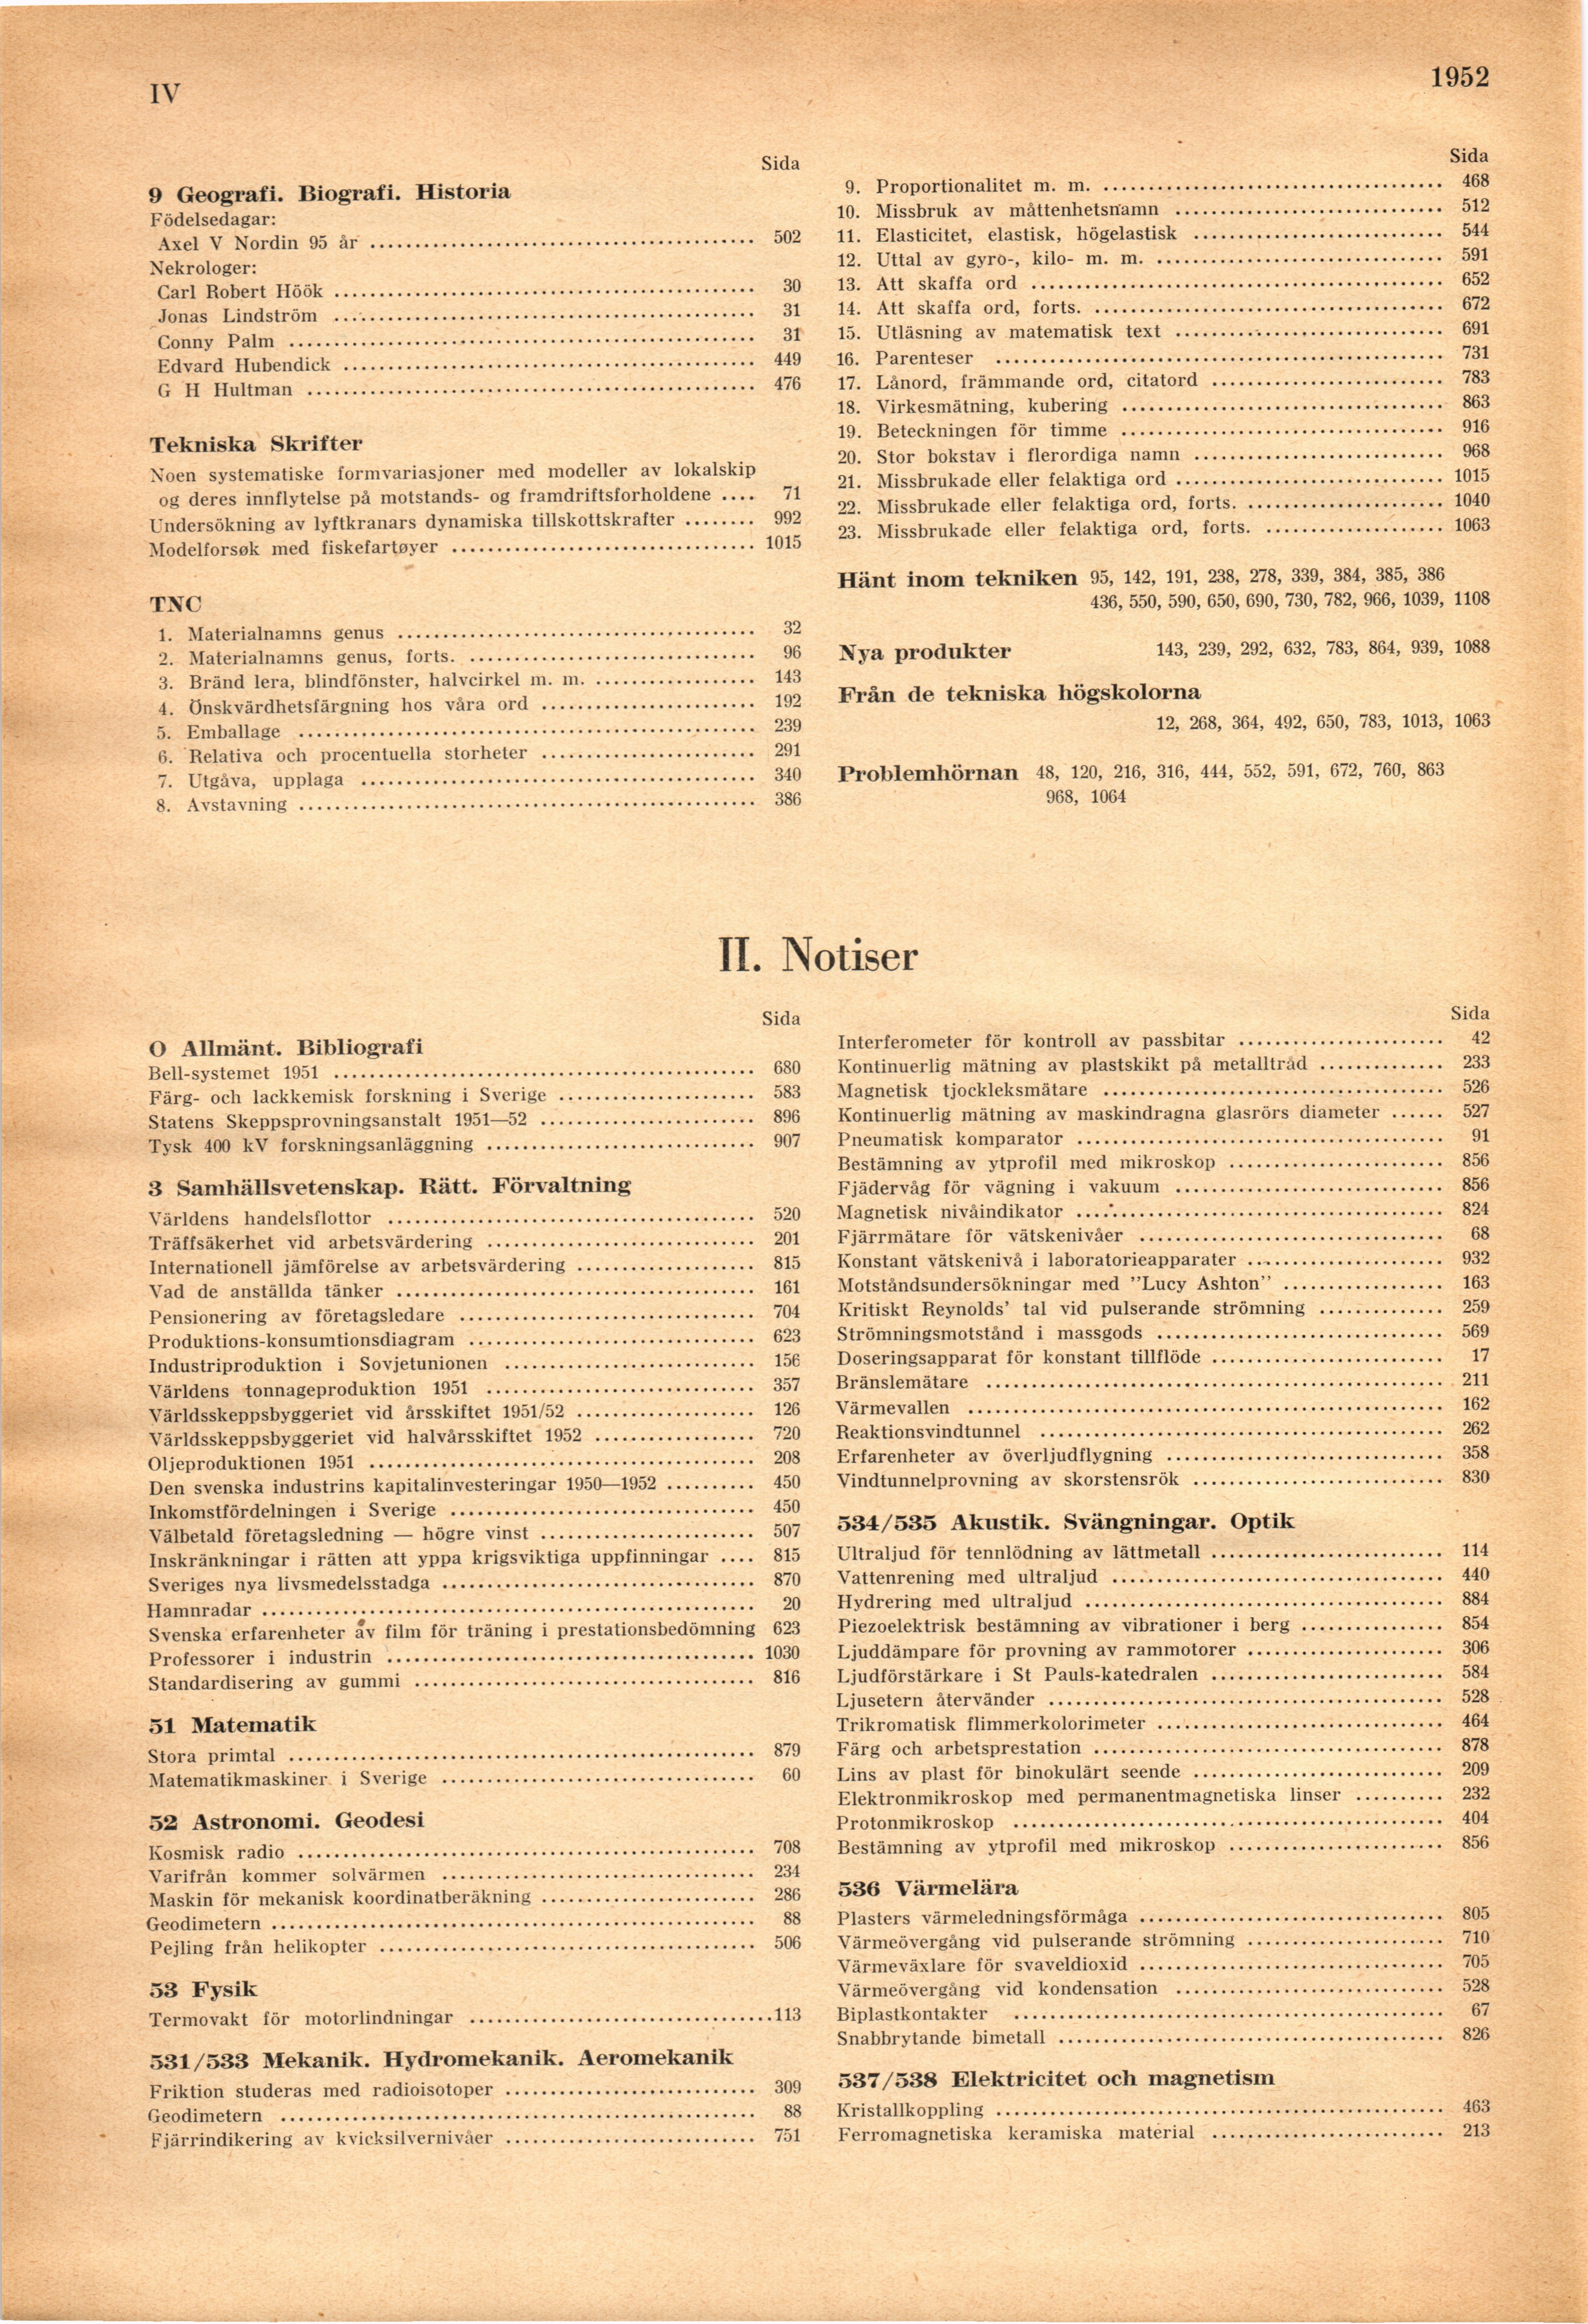 0004 (Teknisk Tidskrift / Årgång 82. 1952)